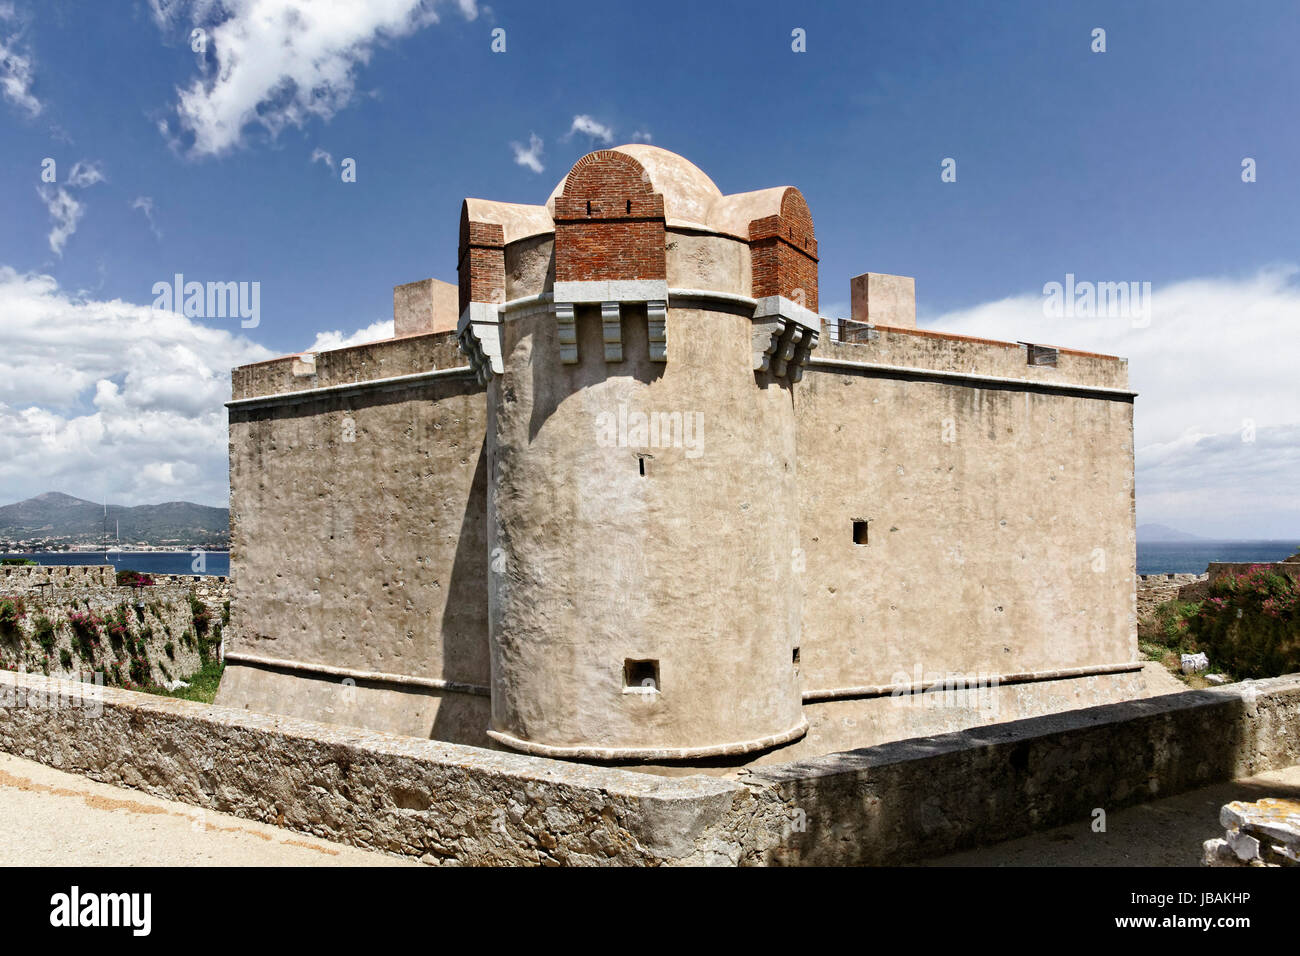 Saint-Tropez, Zitadelle, Citadelle de Saint-Tropez, Cote d'Azur - Citadel of Saint-Tropez, Cote d'Azur, Southern France Stock Photo